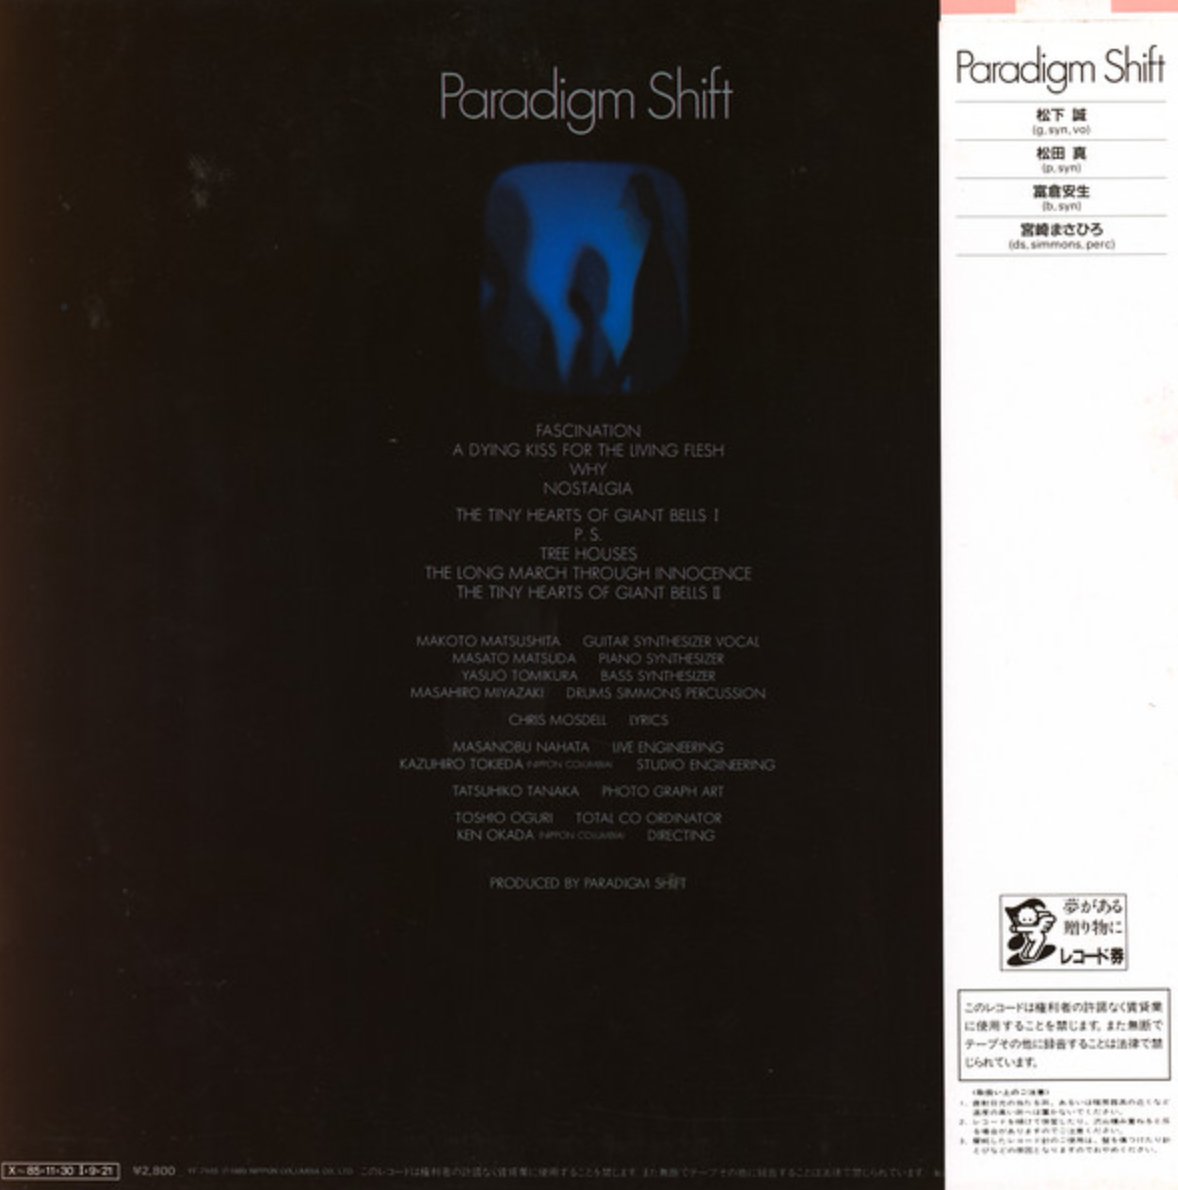 Paradigm Shift - Paradigm Shift (Japan Import) - Inner Ocean Records